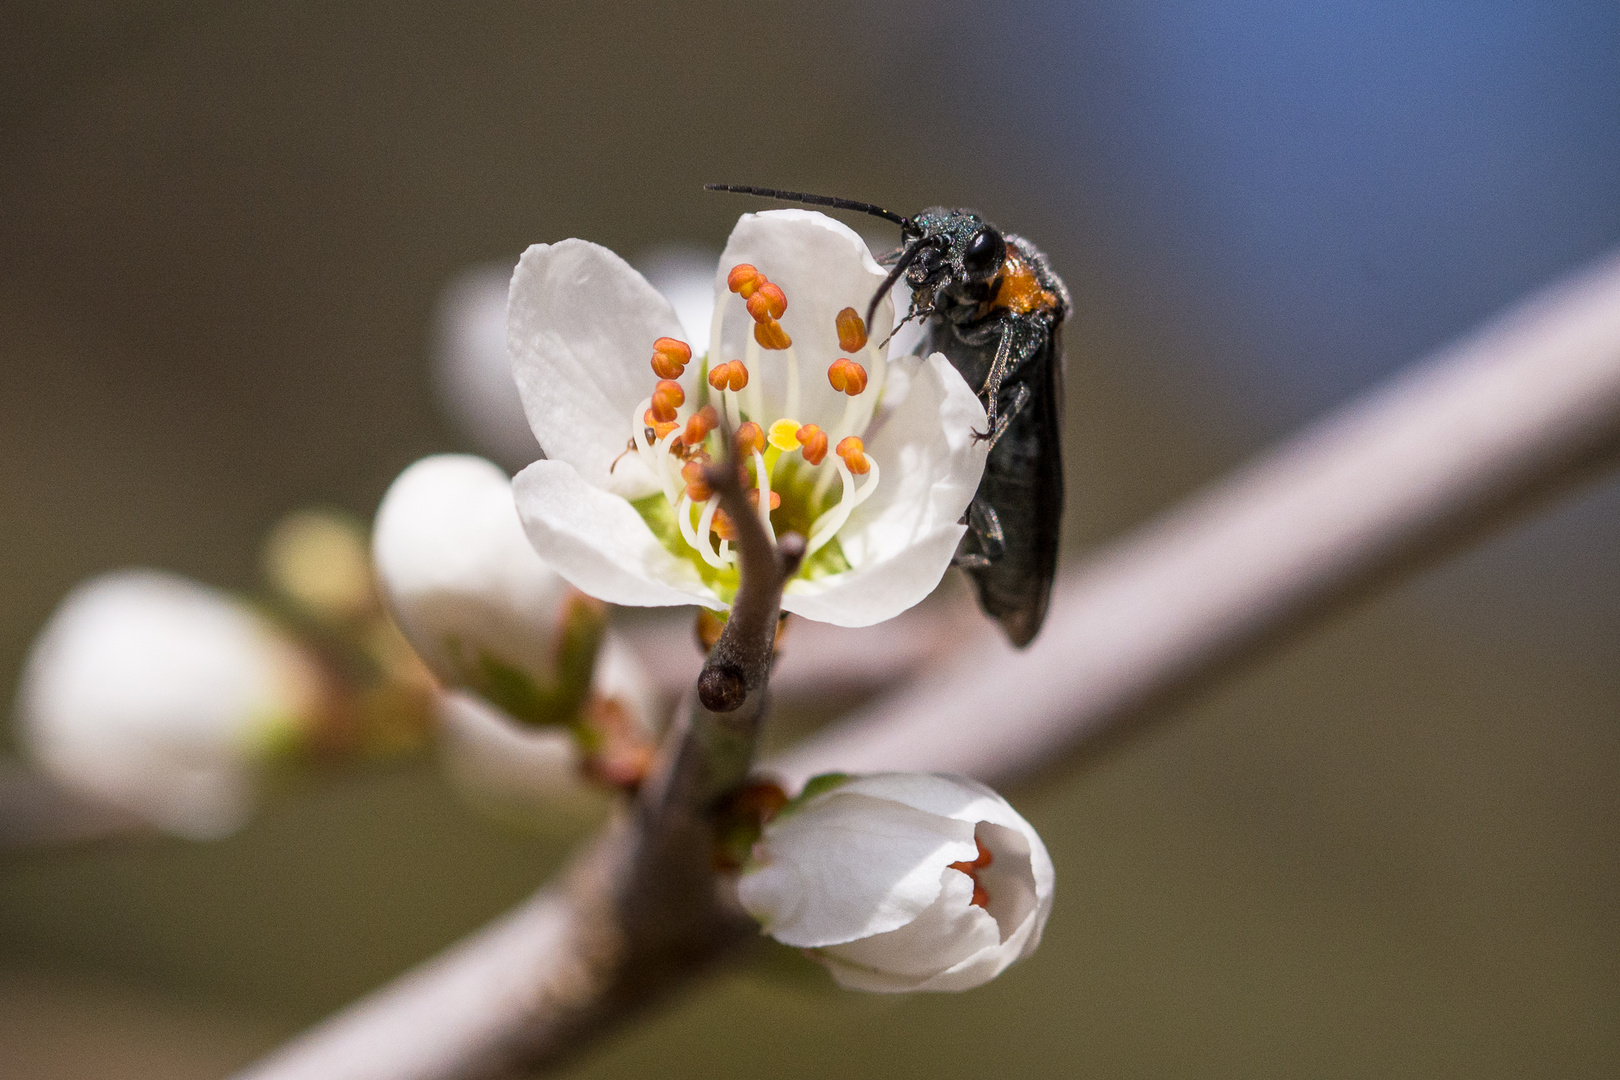 Schehenblüten eine sehr beliebte Nahrungsquelle. Nicht nur für Bienen....